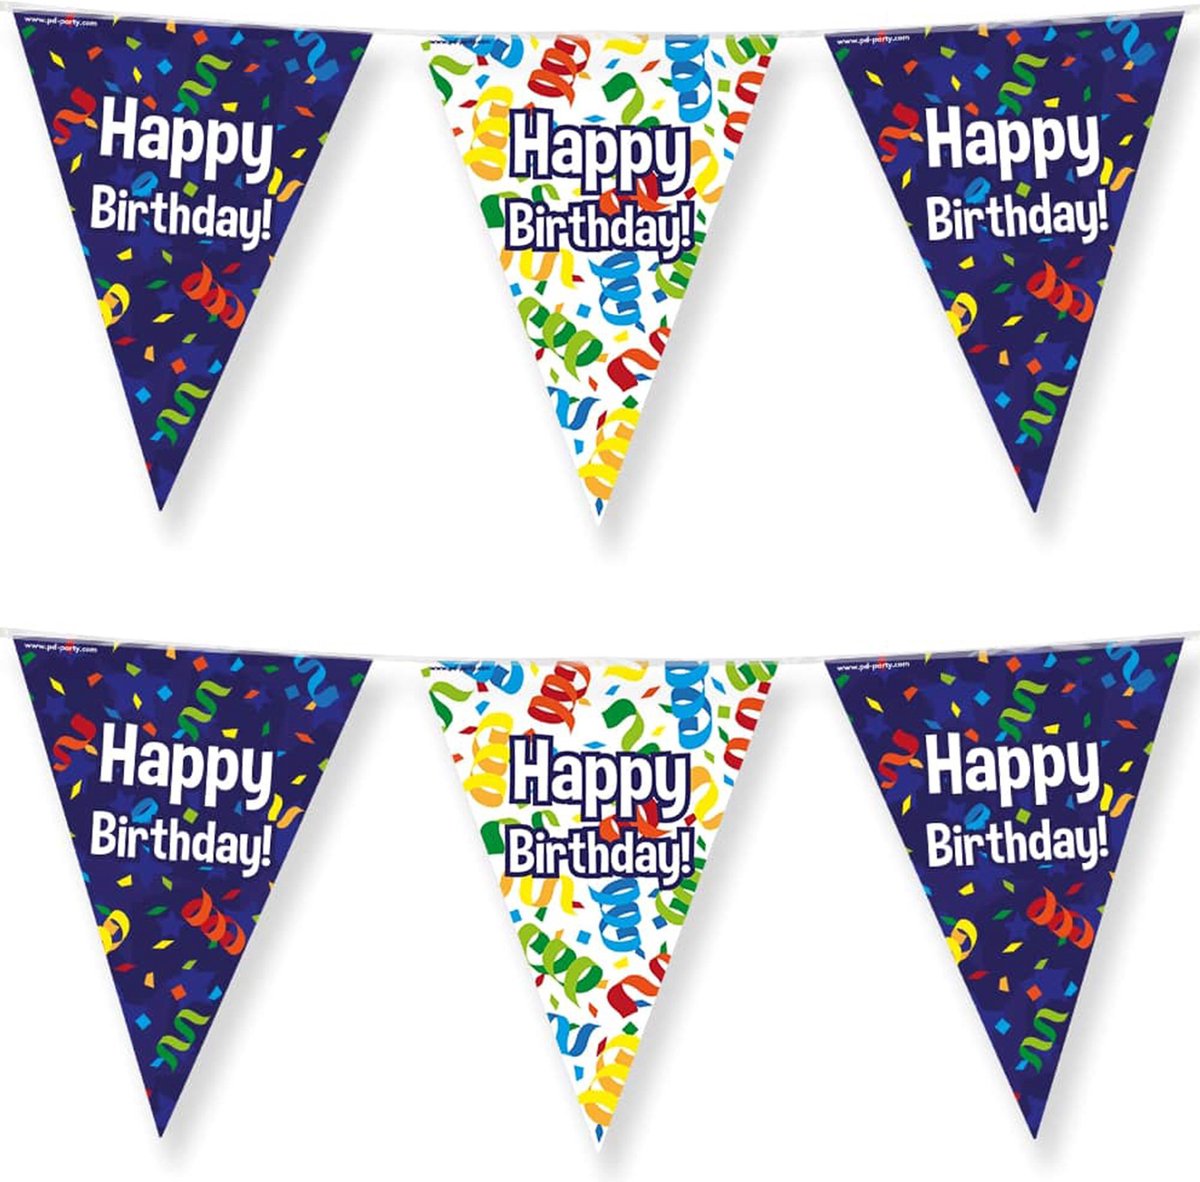 Paperdreams Vlaggenlijn - 3 st - Happy birthday/verjaardags feest - 10m